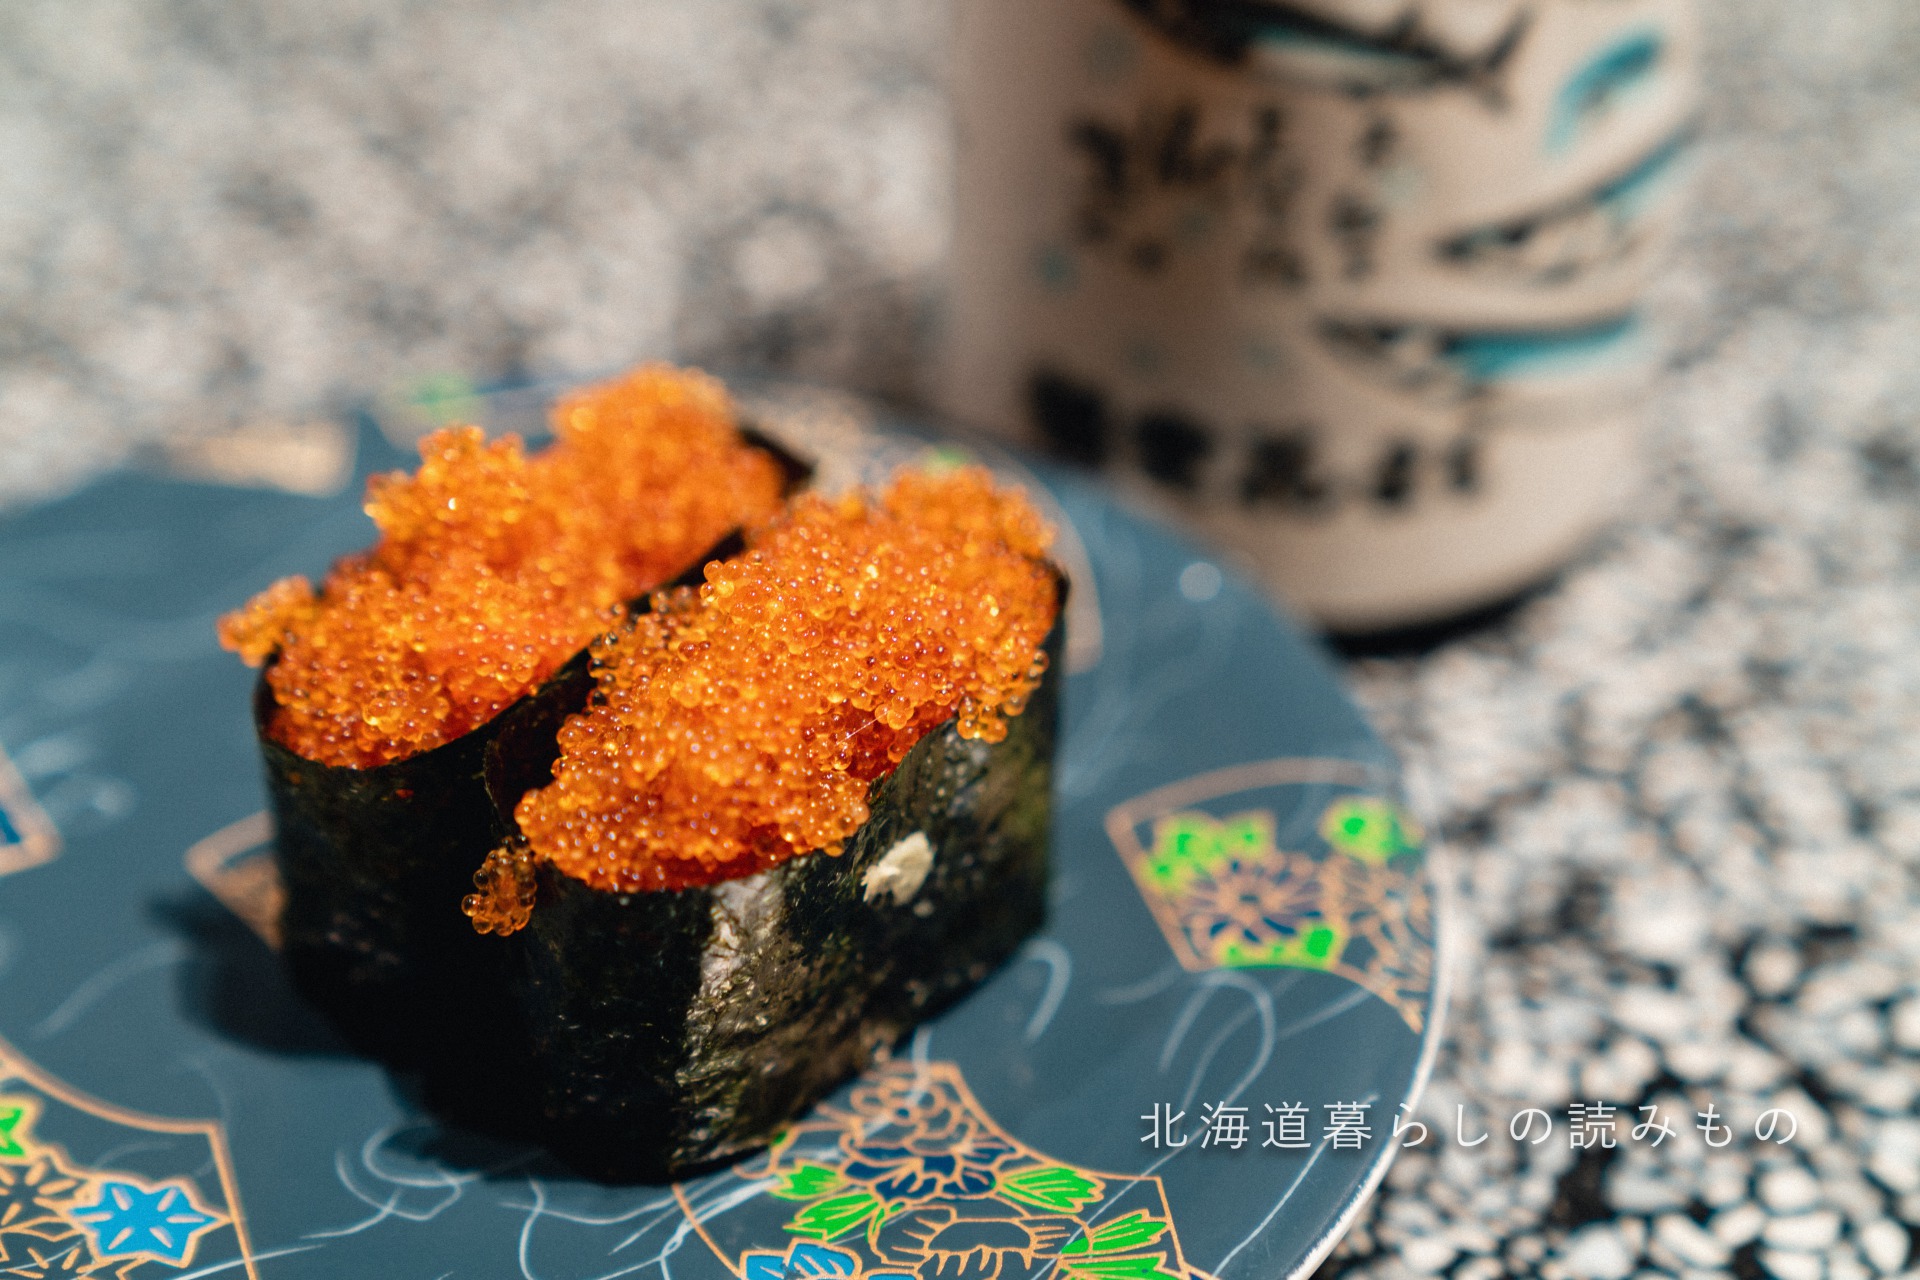 回転寿司 根室花まるのメニュー「とびっこ」の写真